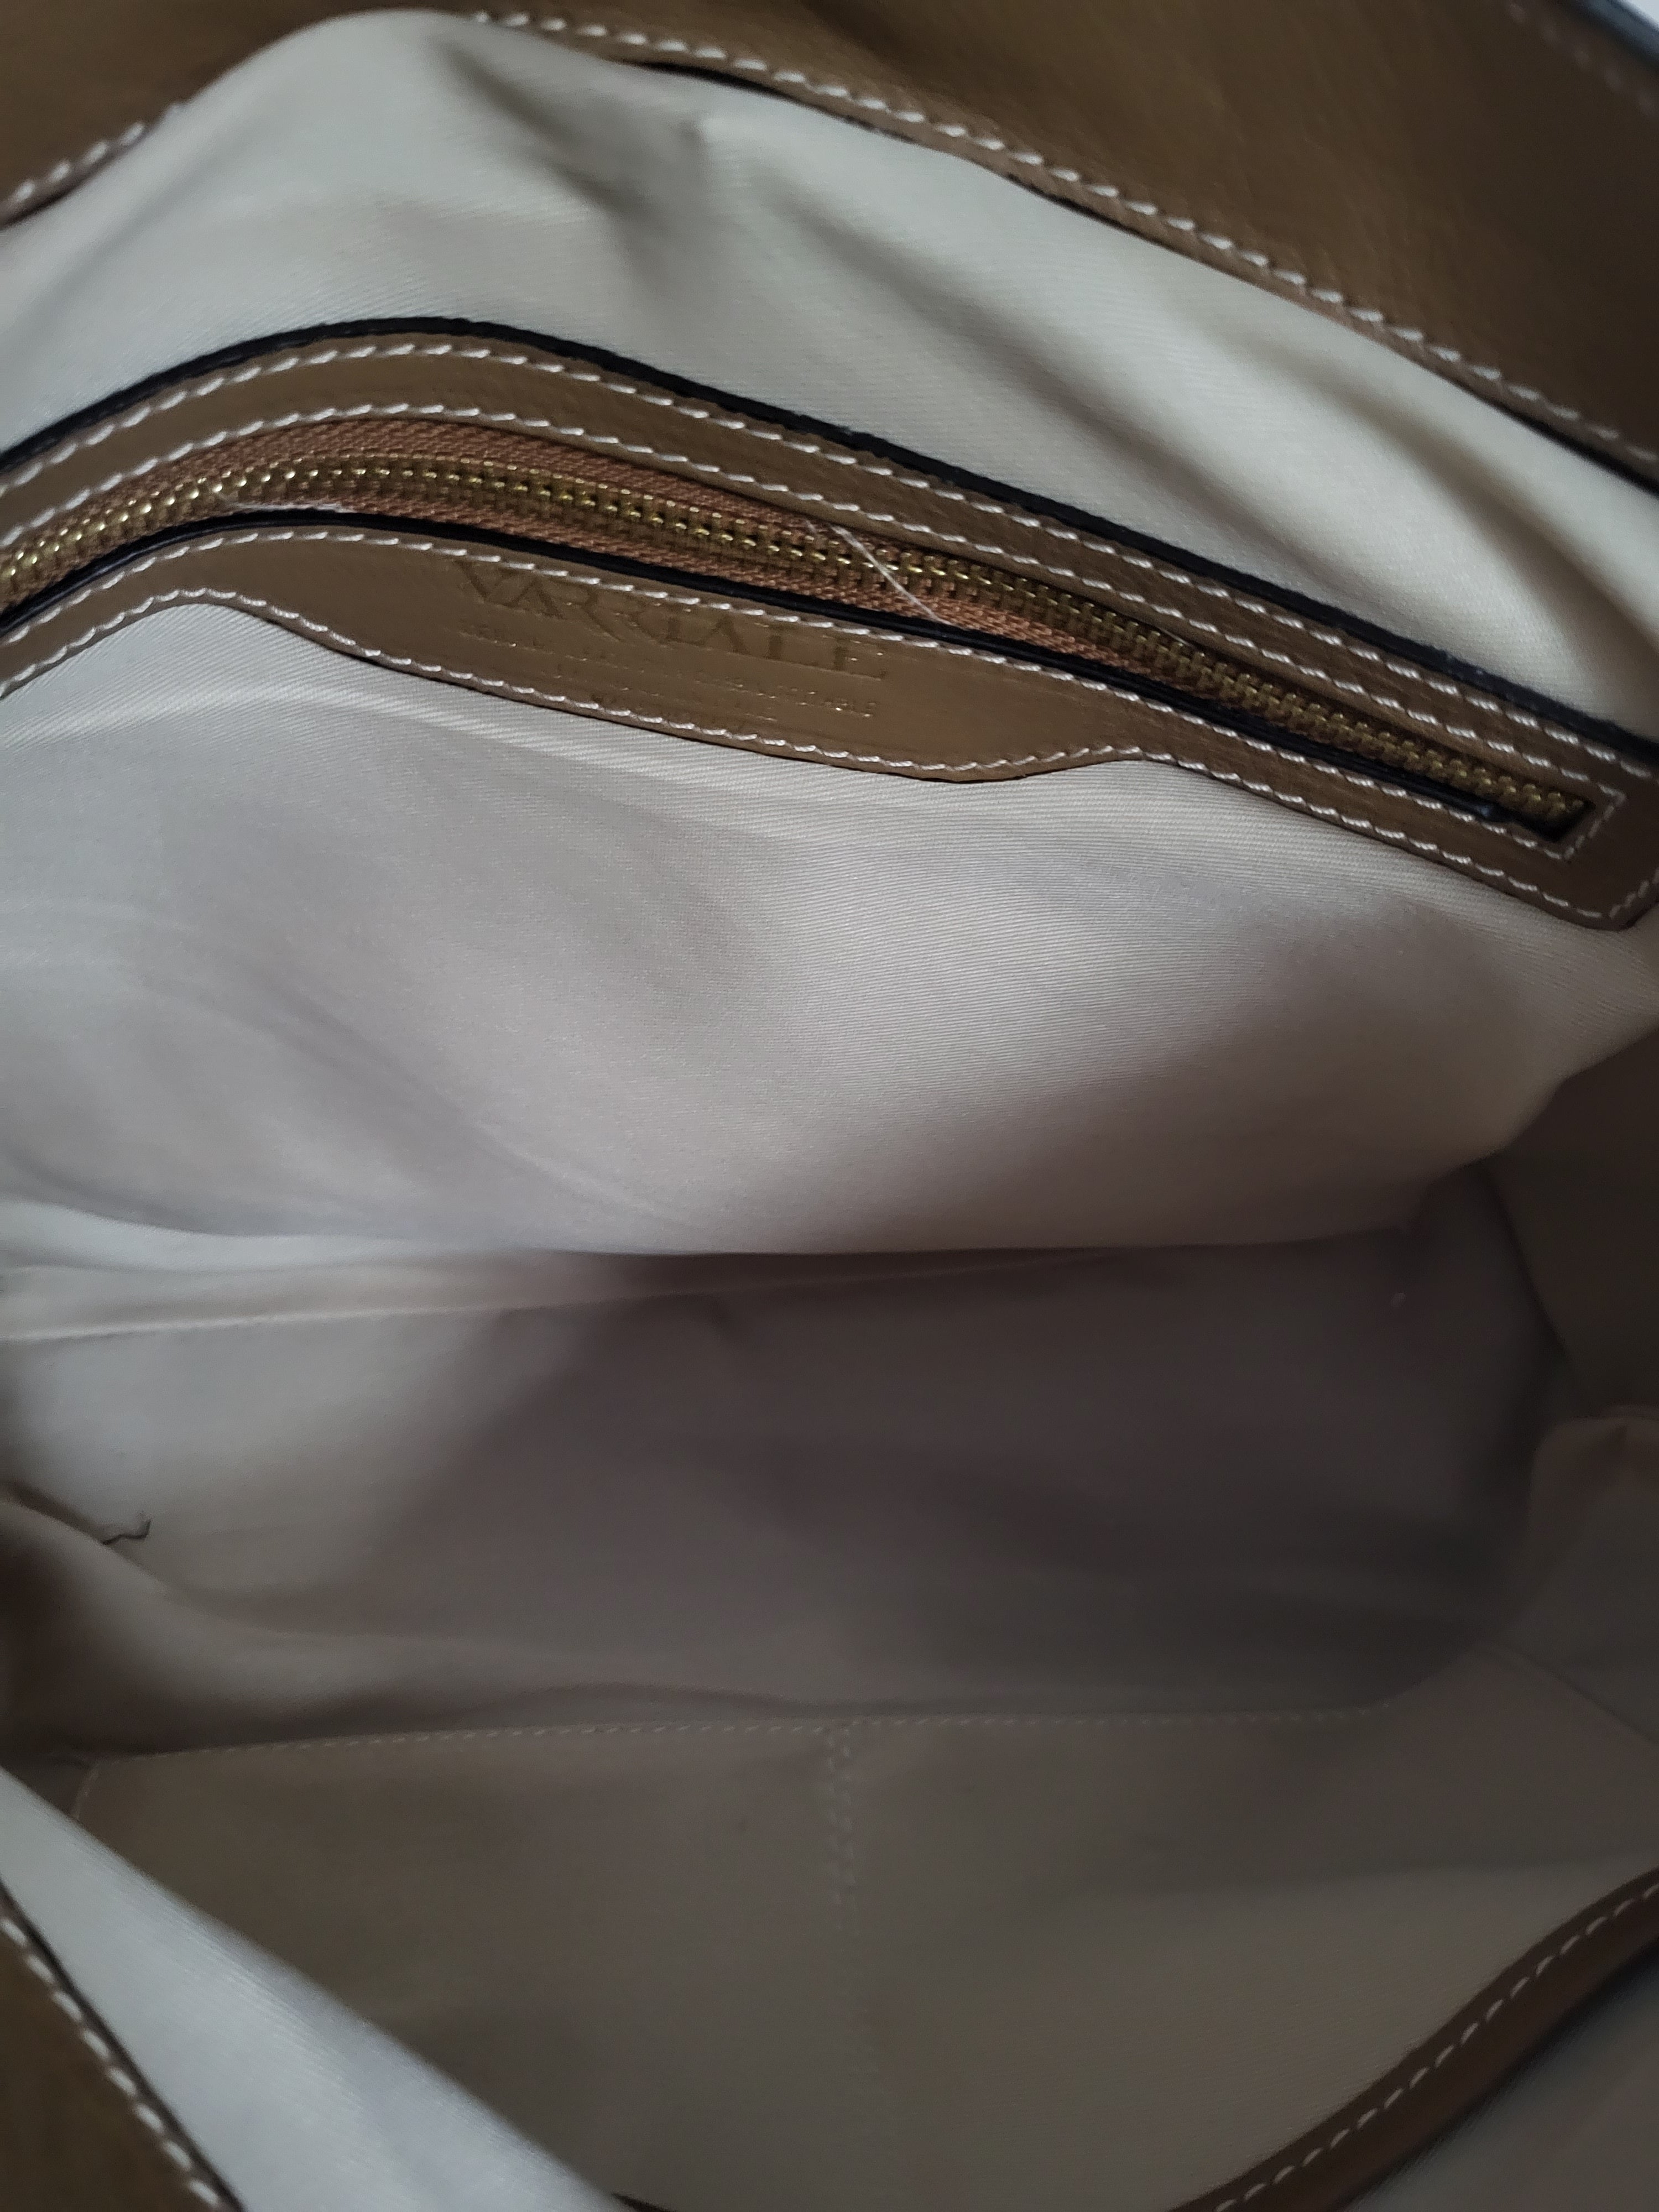 Varriale Brown Leather Top Handle/Shoulder Bag